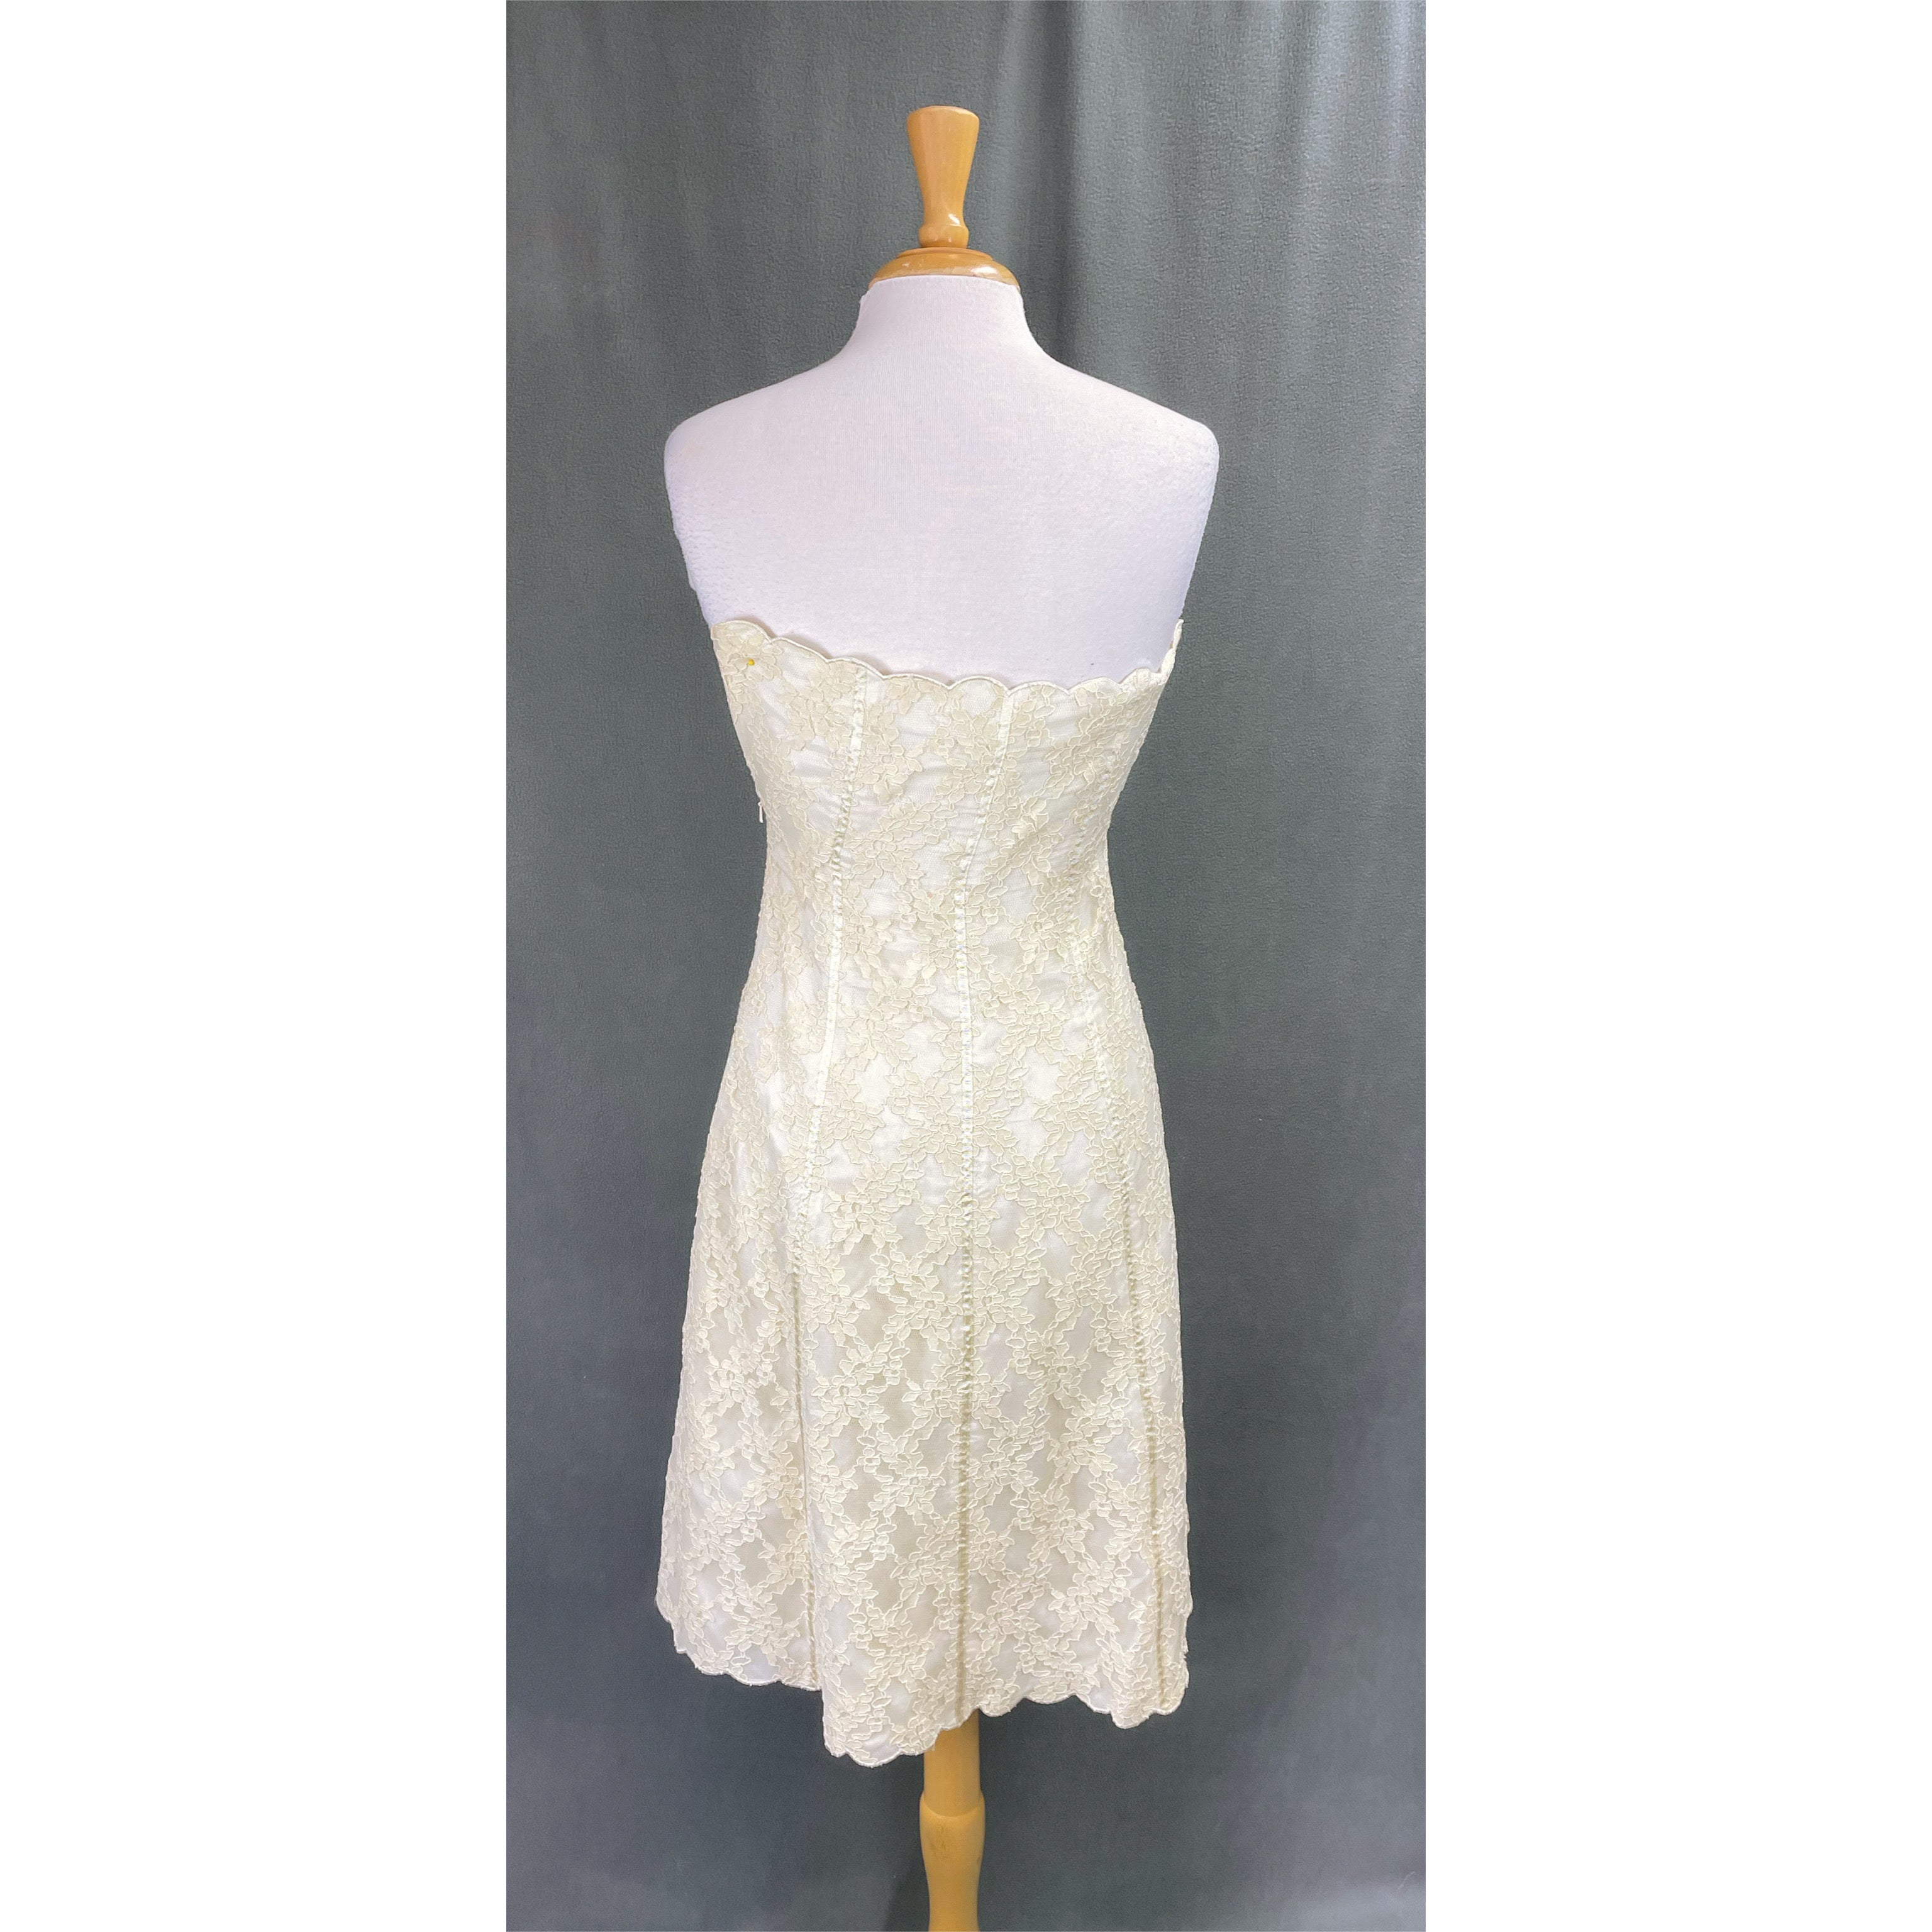 White House/Black Market ivory lace dress, size 6